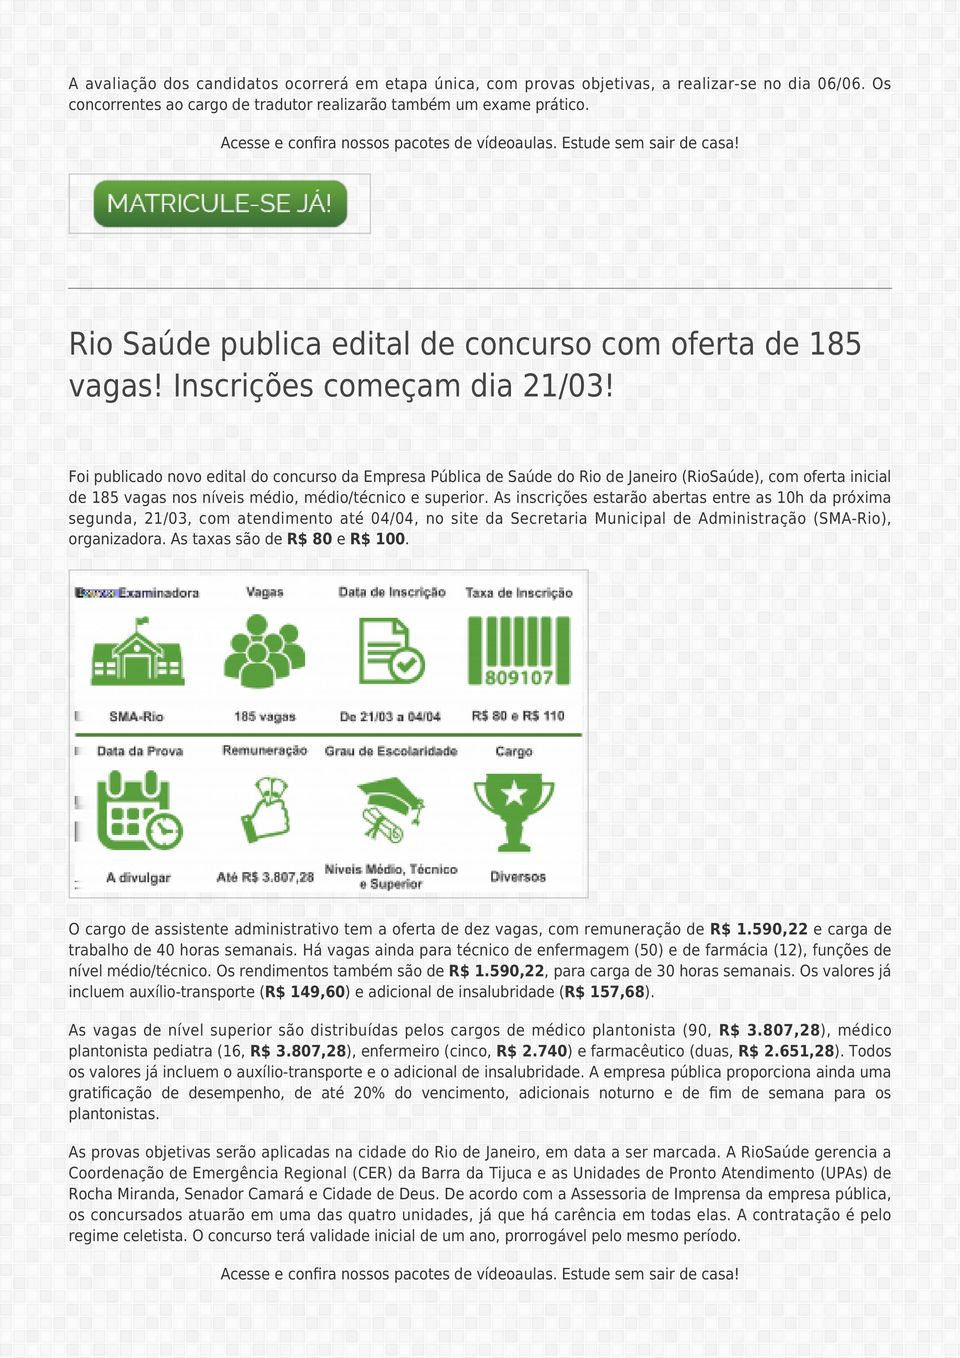 Foi publicado novo edital do concurso da Empresa Pública de Saúde do Rio de Janeiro (RioSaúde), com oferta inicial de 185 vagas nos níveis médio, médio/técnico e superior.